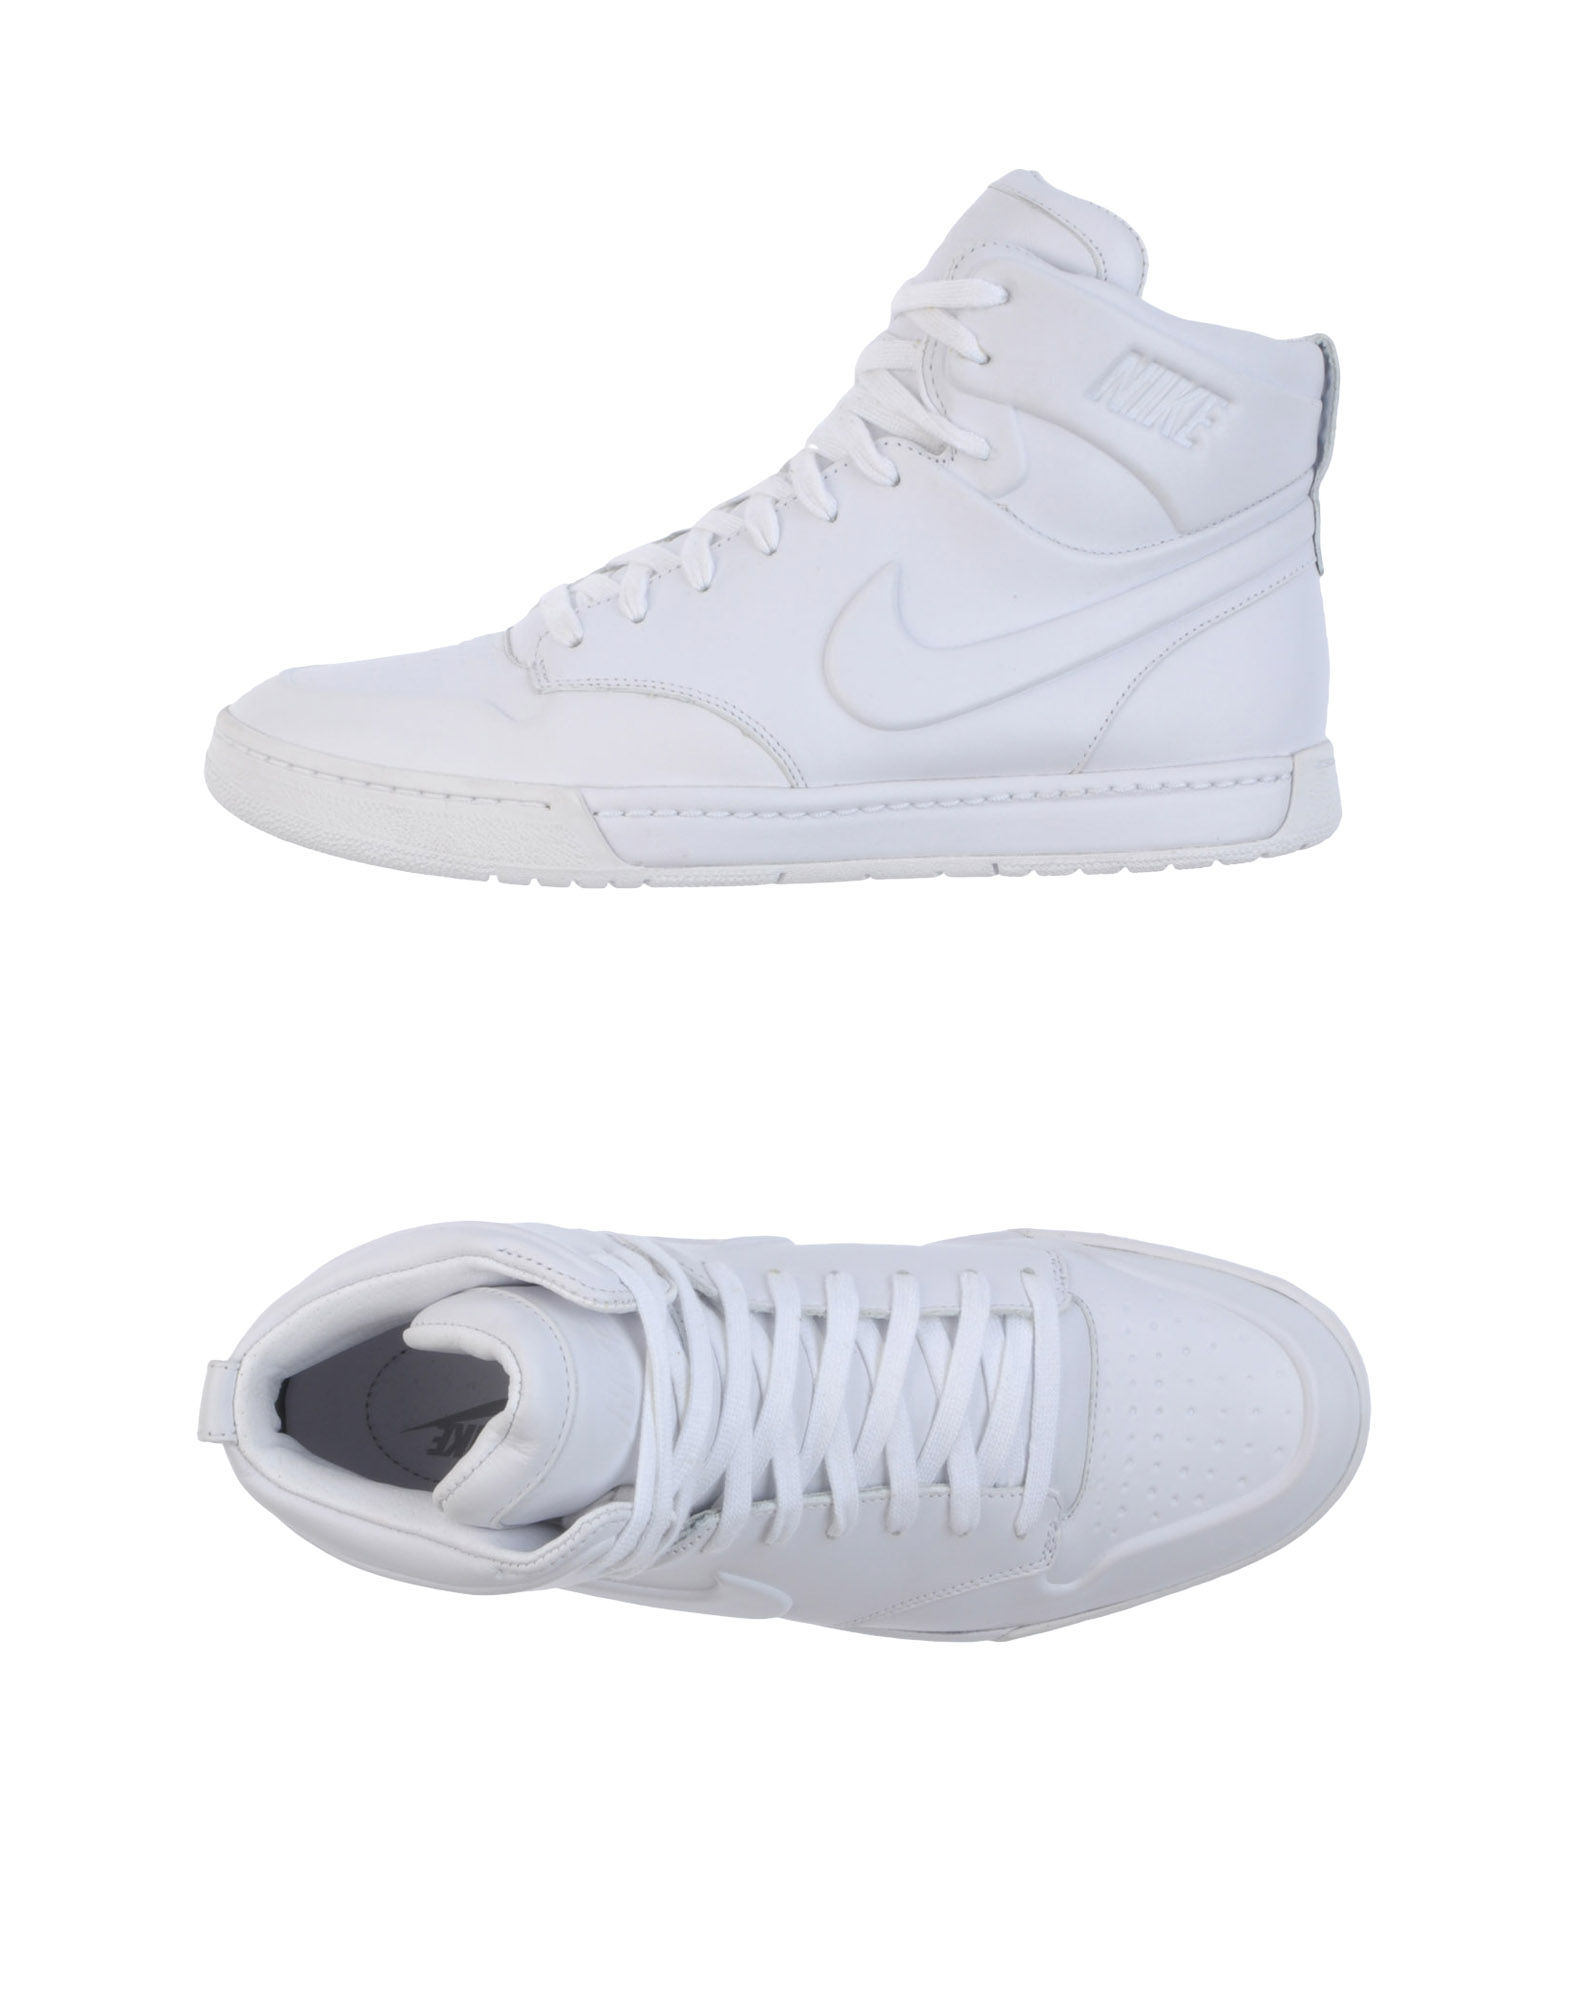 Nike Leather Hightop Sneaker in White (Black) for Men - Lyst